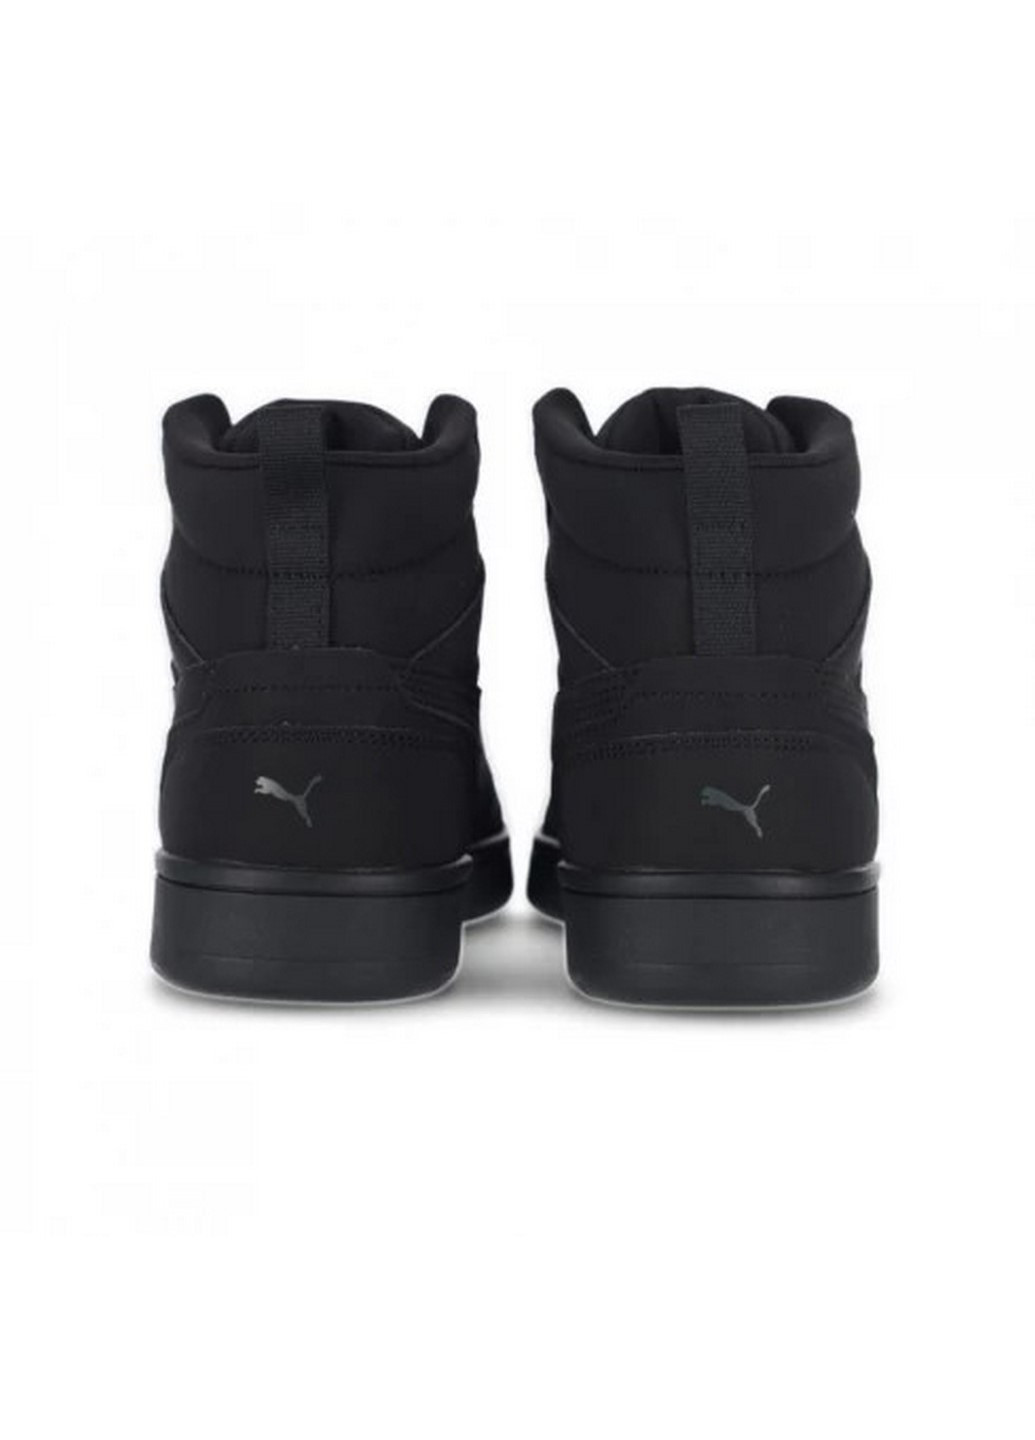 Черные зимние мужские ботинки rebound v6 buck 39358001 Puma